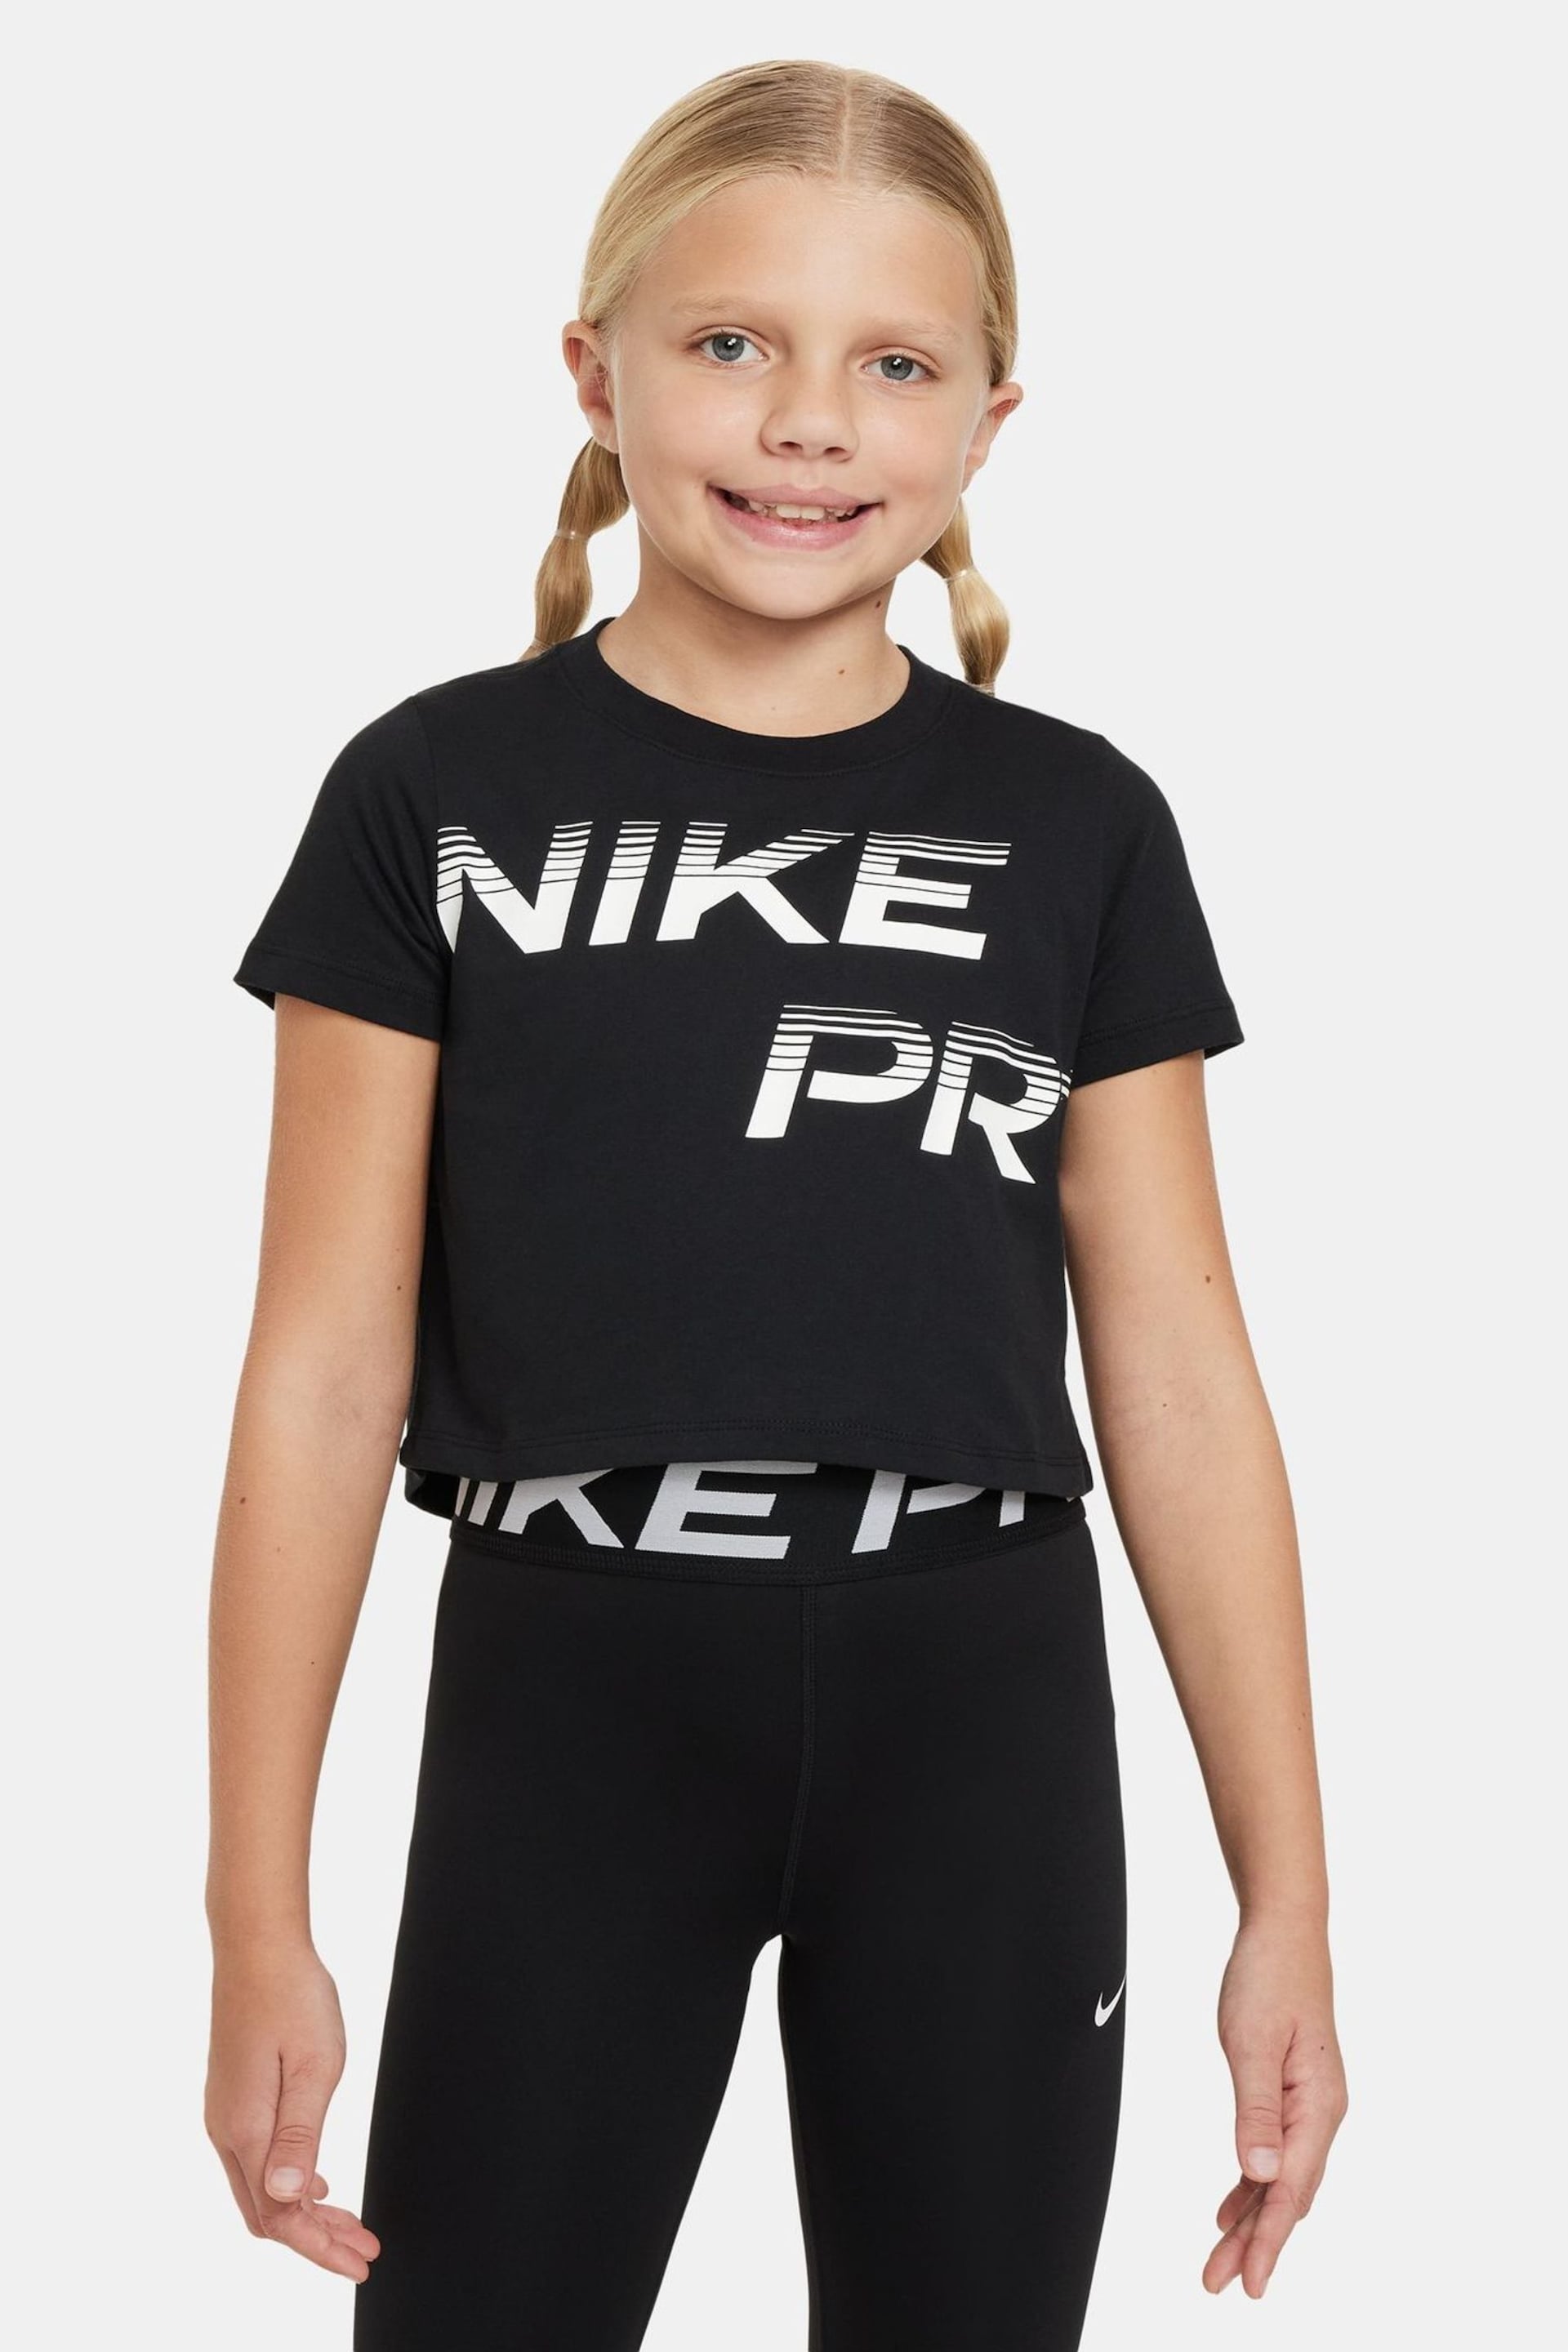 Nike Black Pro Cropped T-Shirt - Image 1 of 4